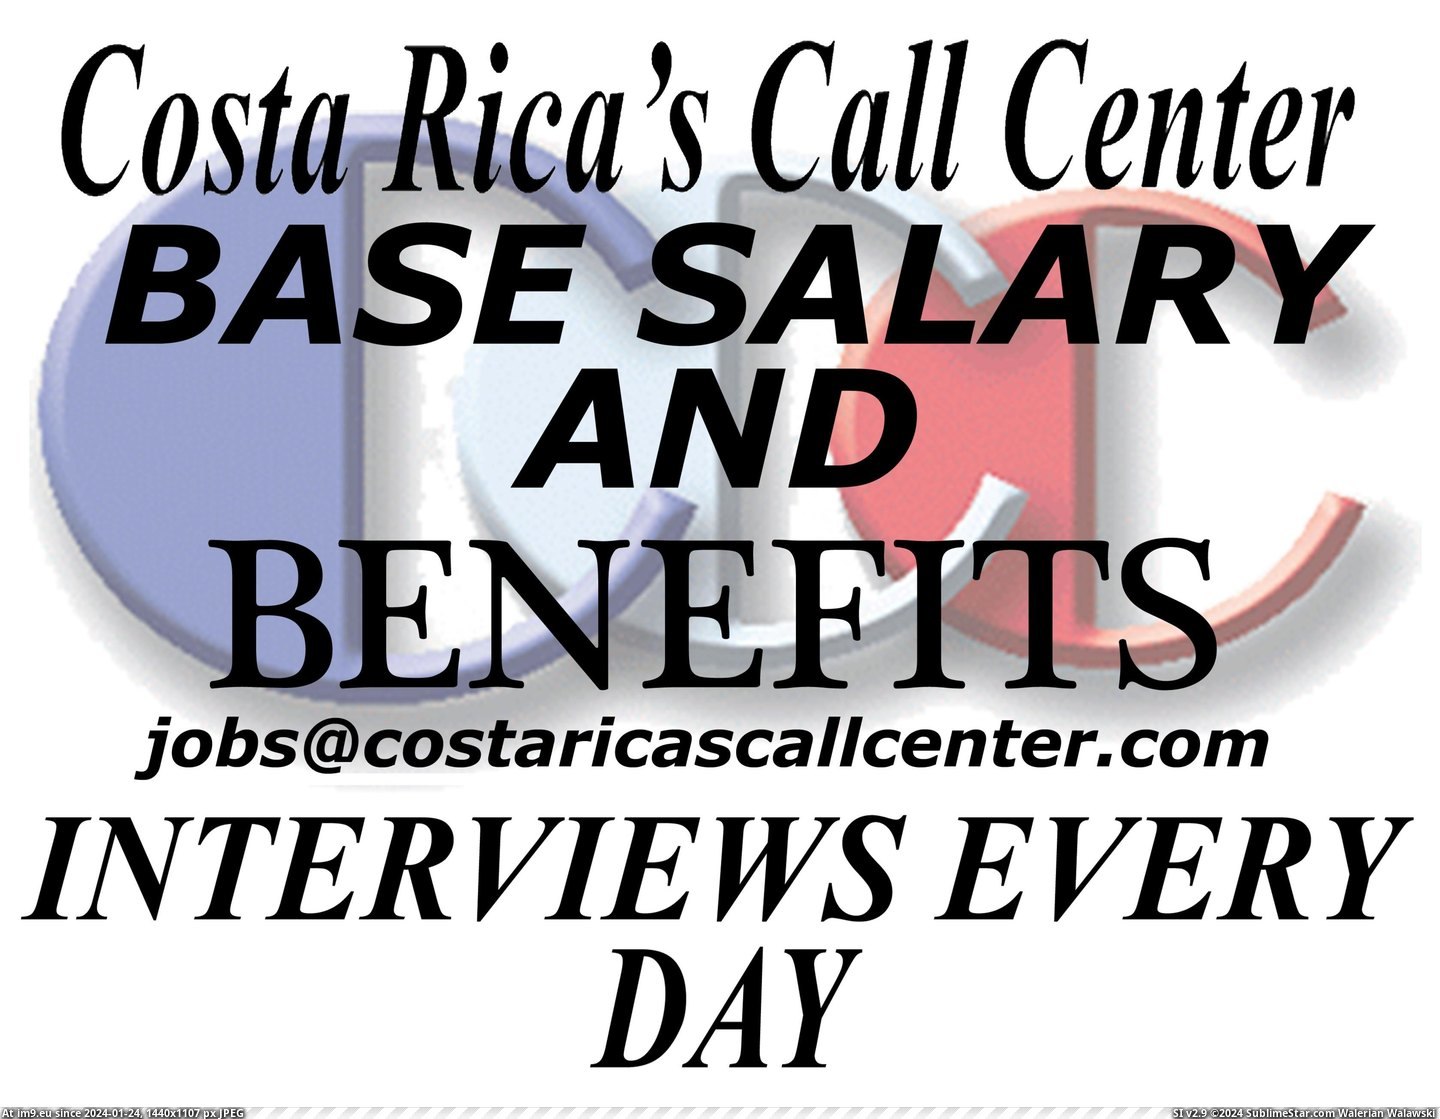 #Work #Job #Salary #Ccc #Benefits CCC SALARY AND BENEFITS JOB WORK Pic. (Bild von album COSTA RICA'S CALL CENTER TEN YEAR ANNIVERSARY))